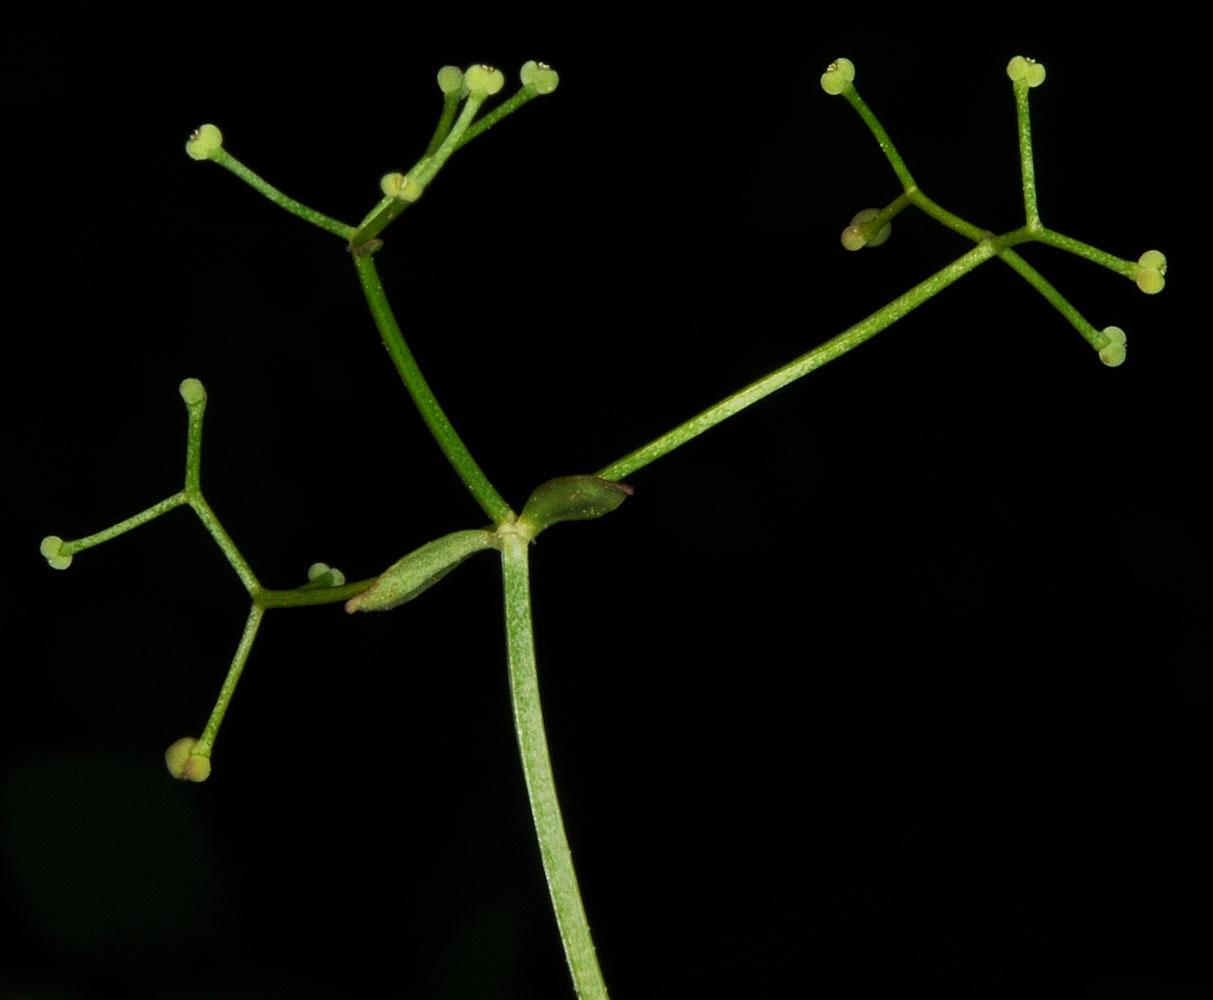 Flora of Eastern Washington Image: Galium sp